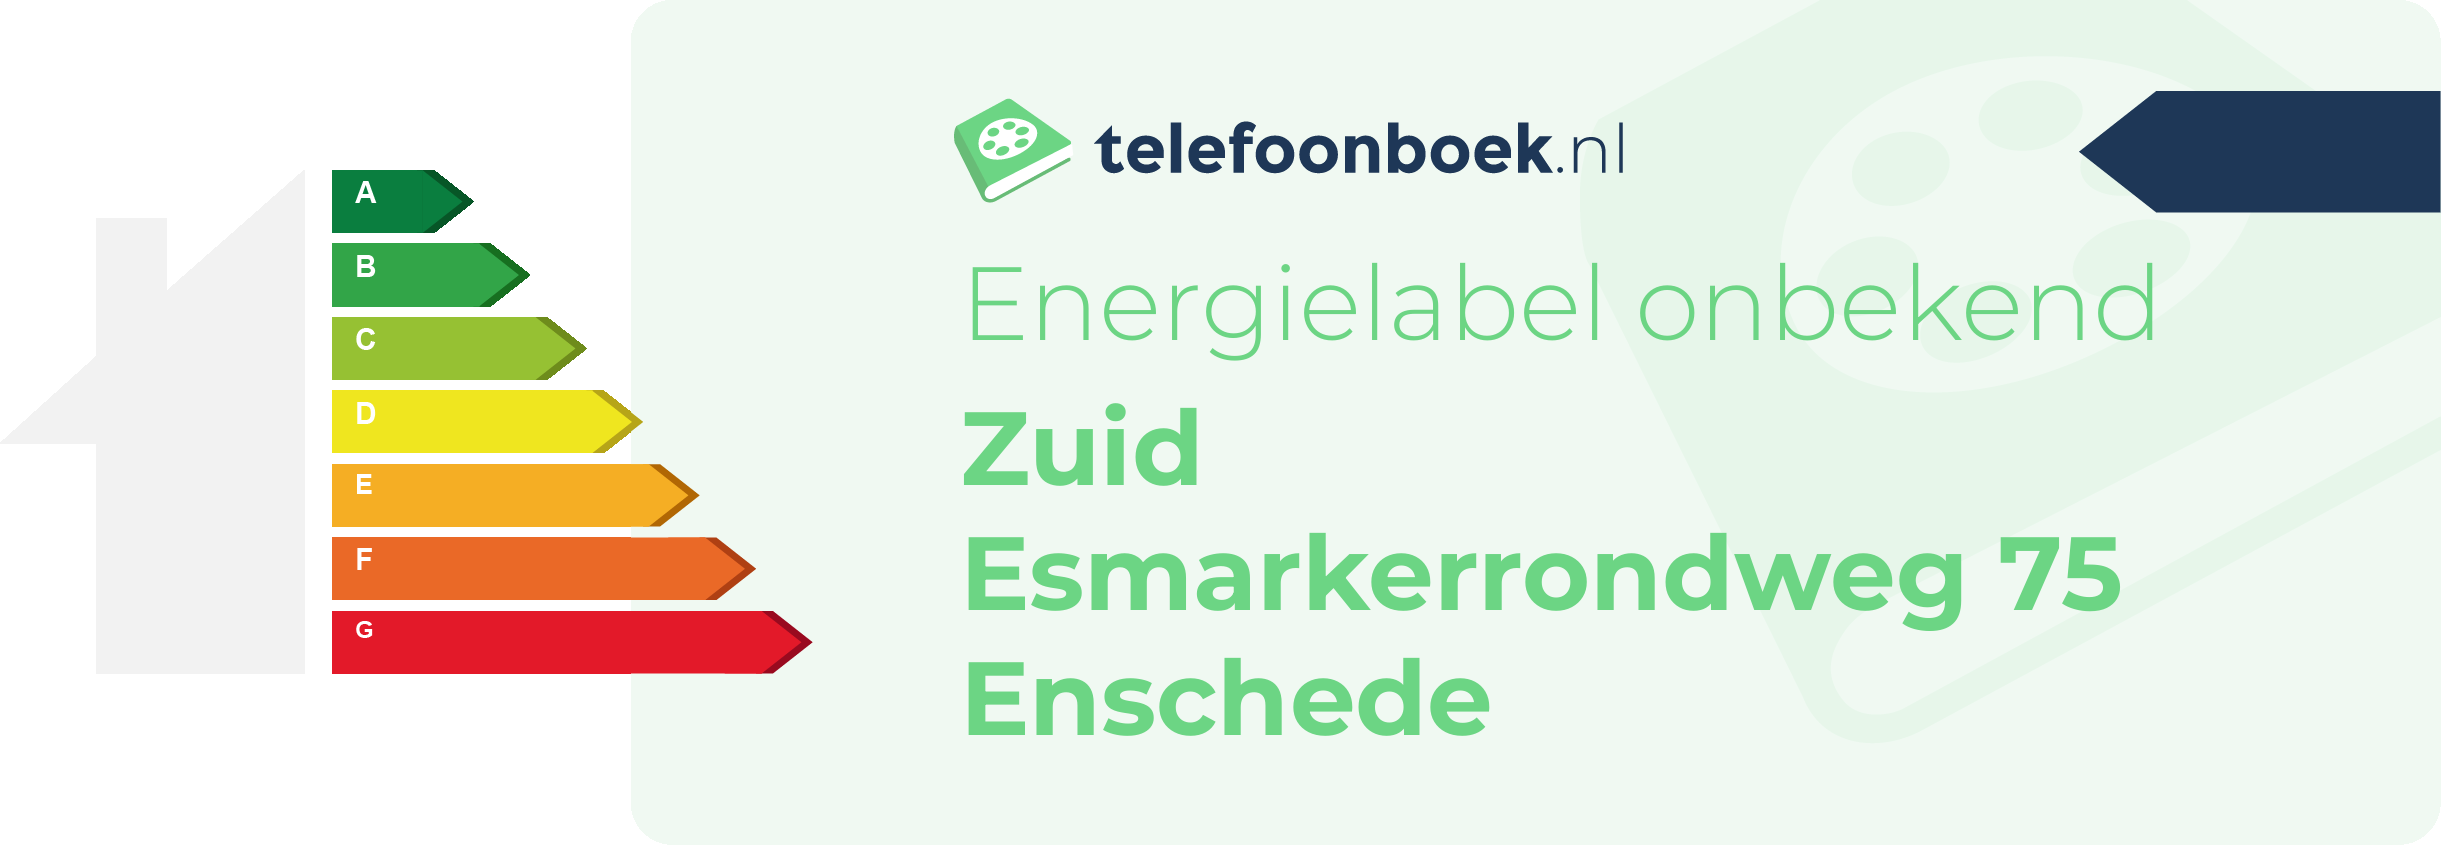 Energielabel Zuid Esmarkerrondweg 75 Enschede